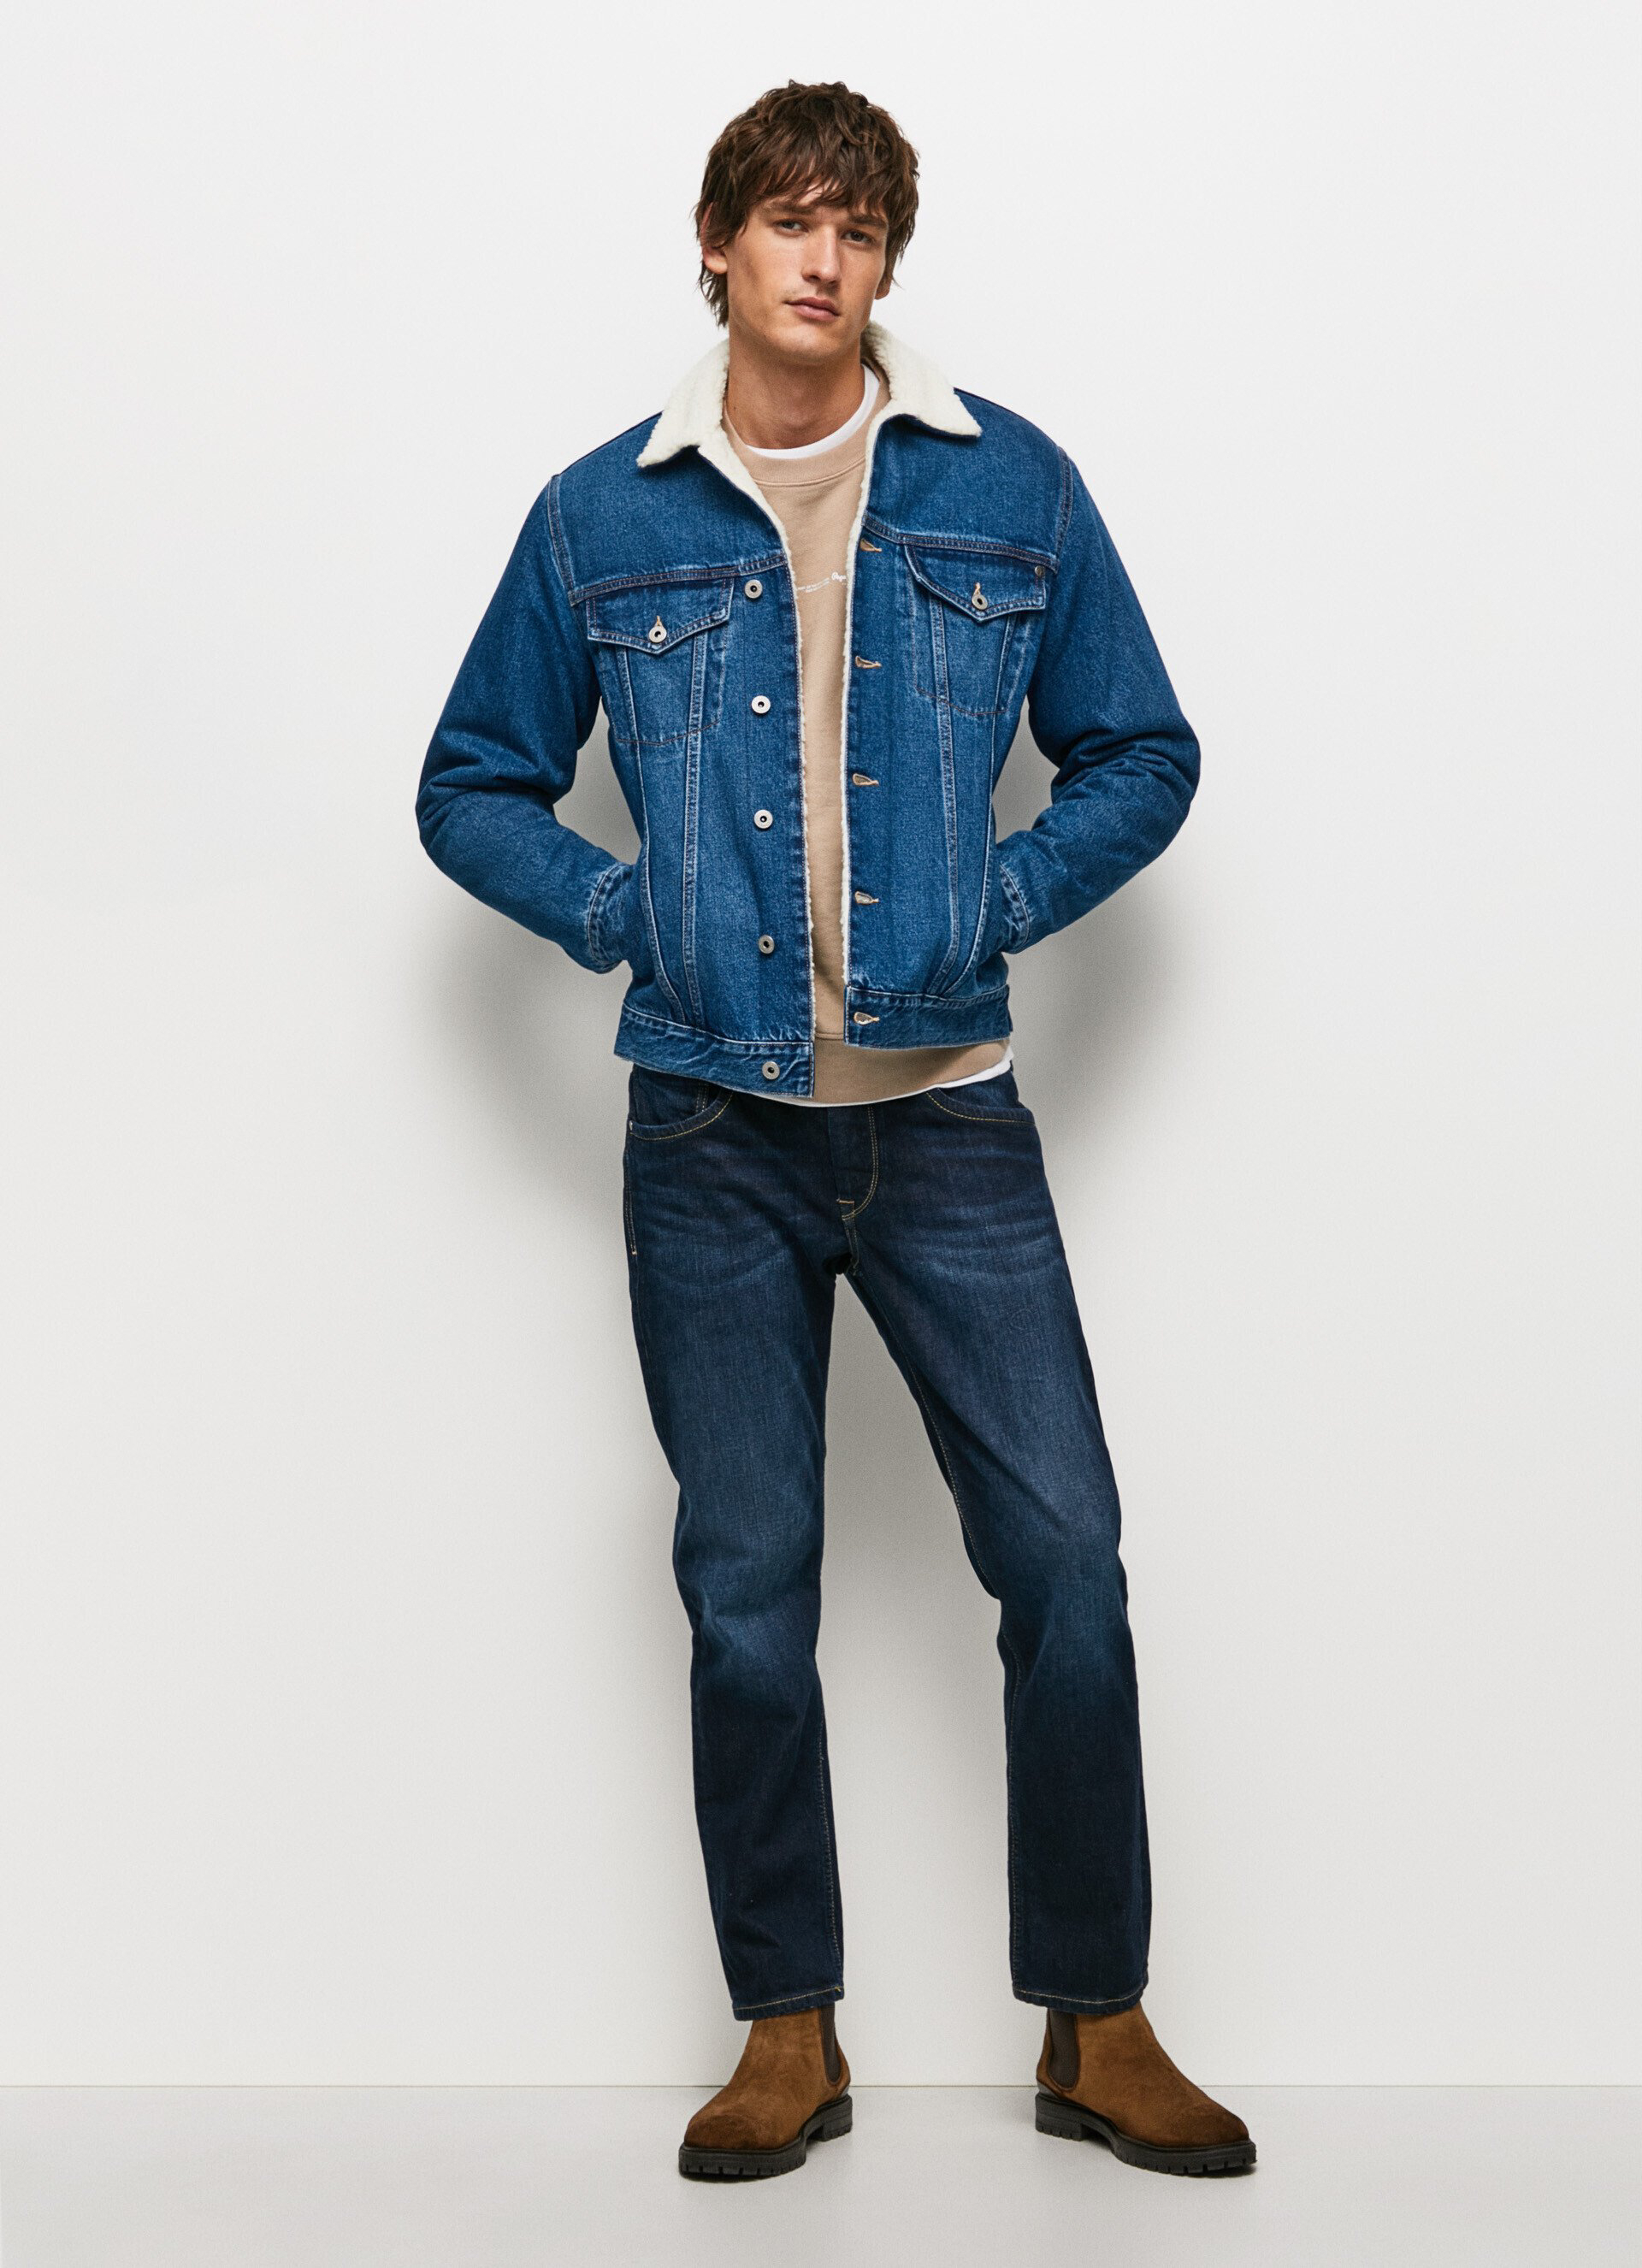 Pepe Jeans pánská džínová Pinner bunda - XL (000)